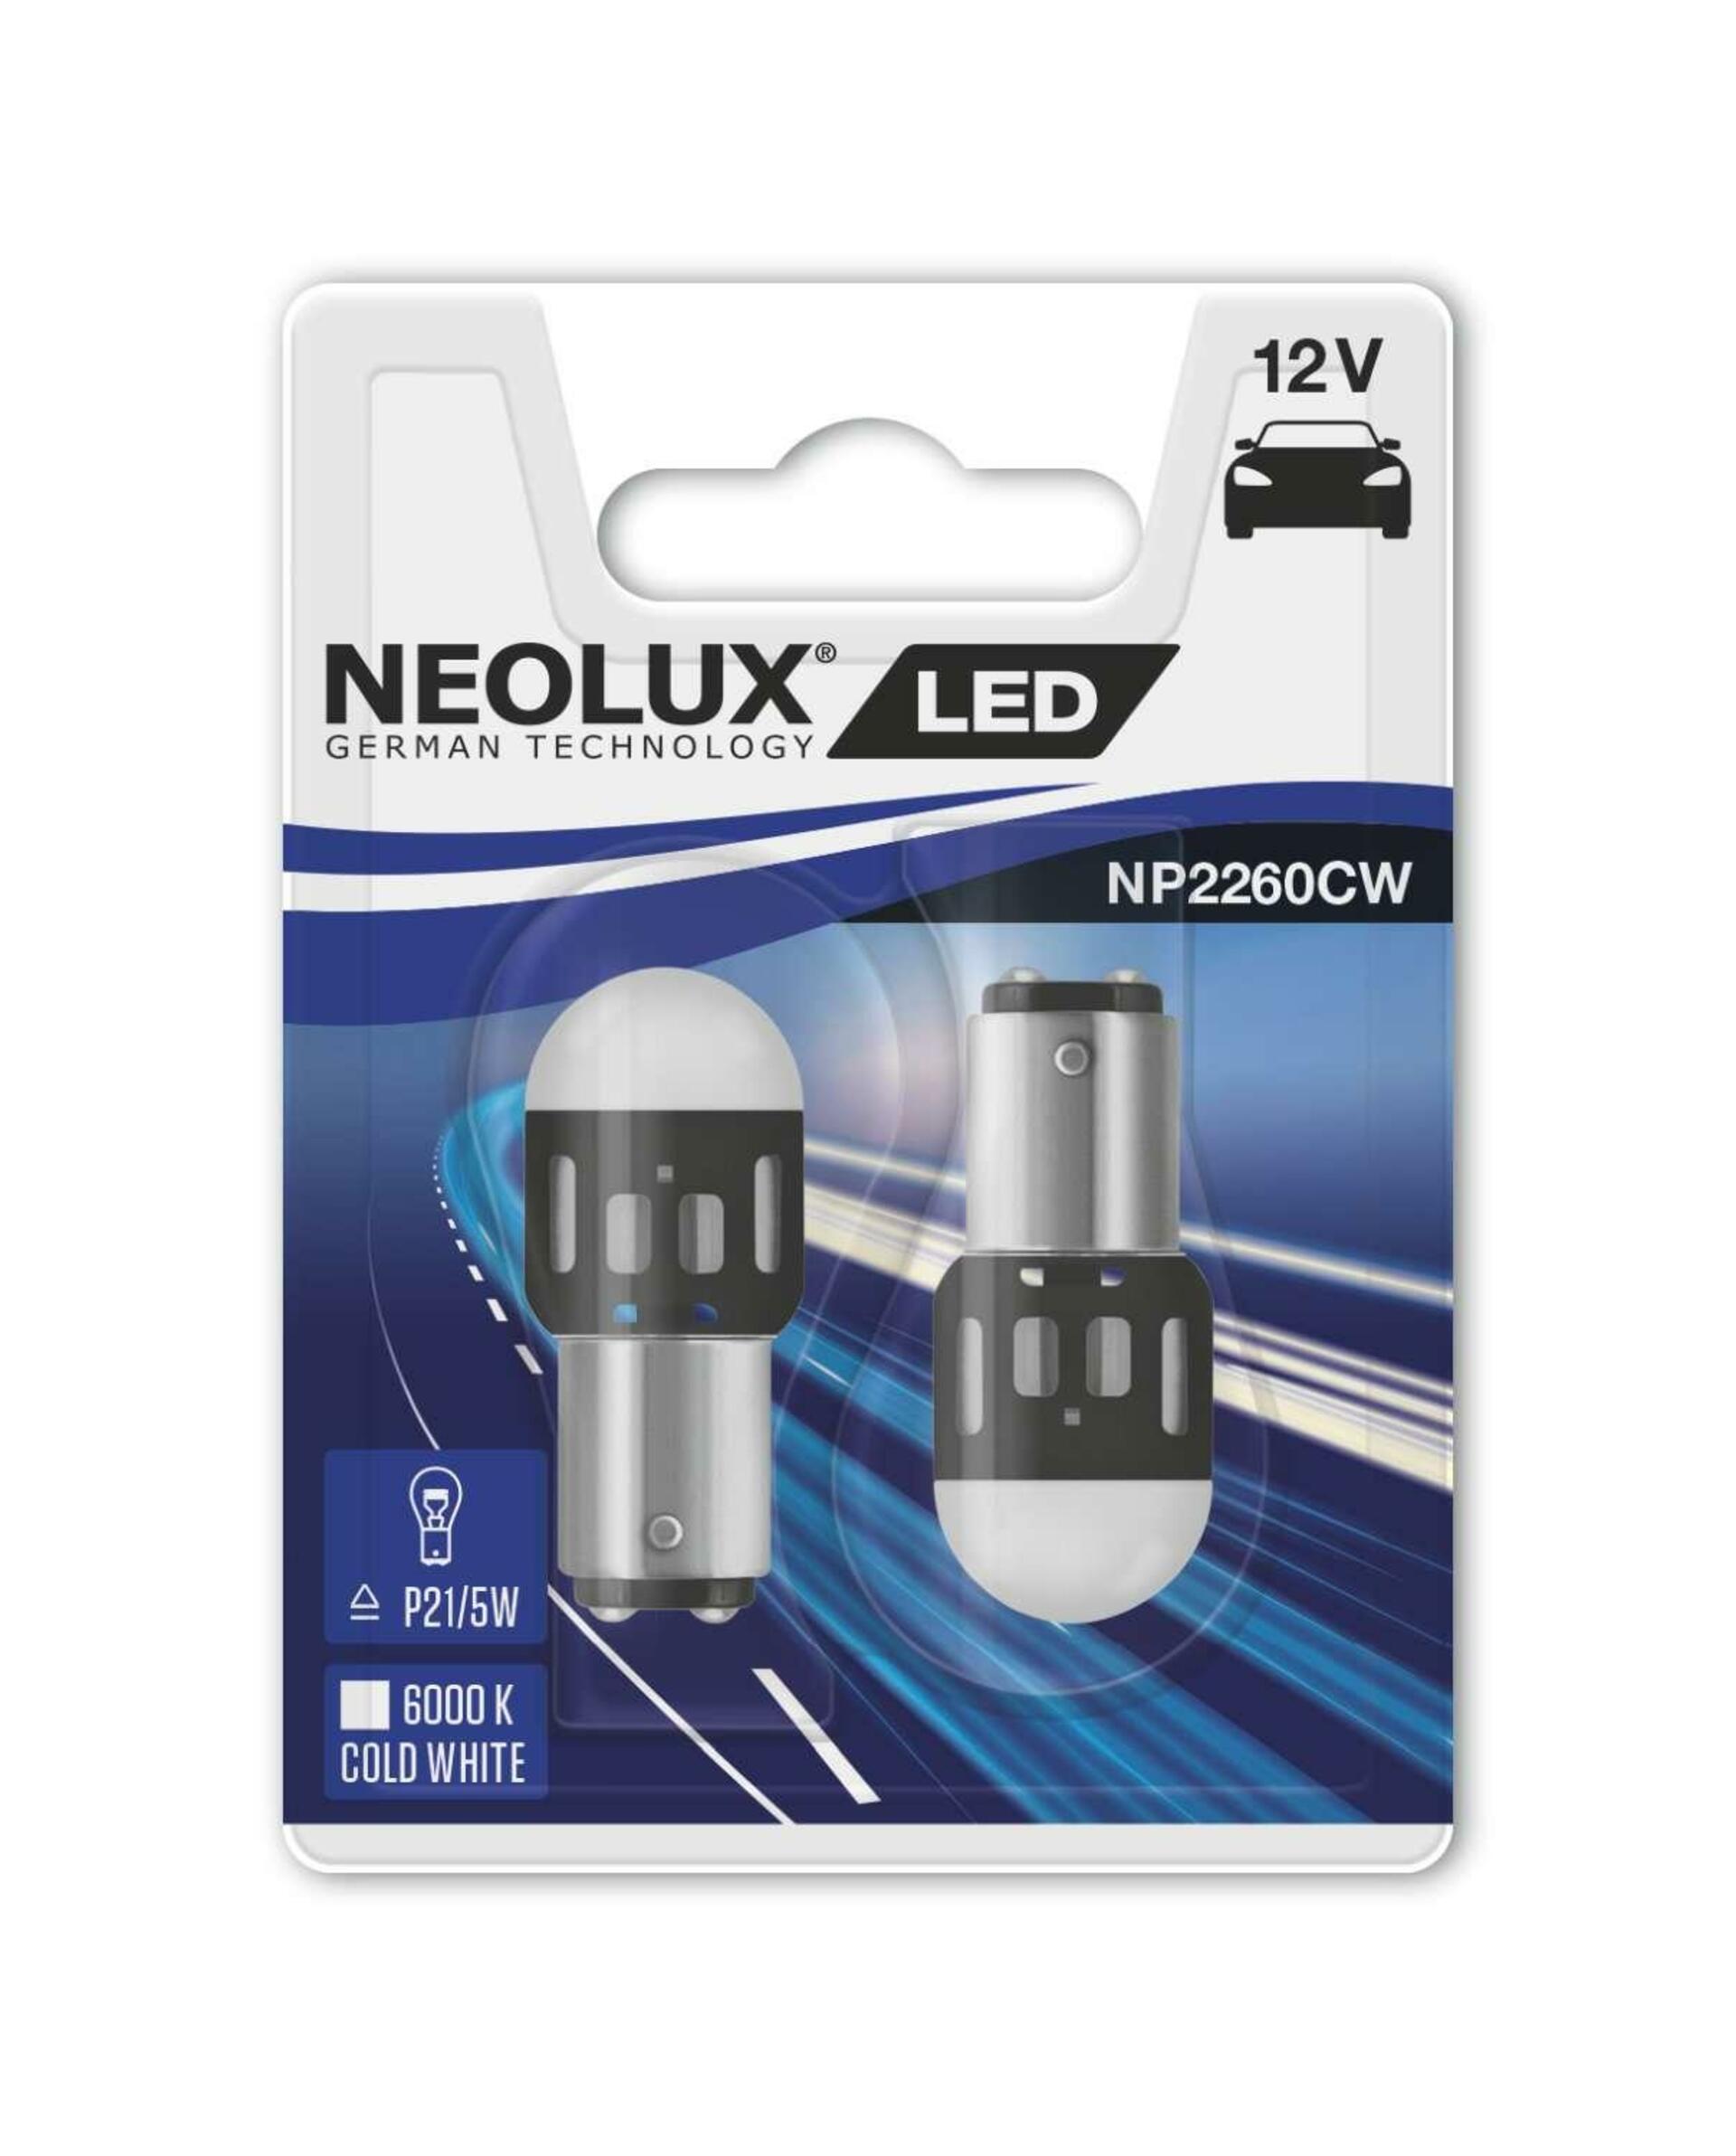 NEOLUX LED P21/5W 12V 1,2W BAY15d Retrofits NP2260CW-02B 2ks NP2260CW-02B